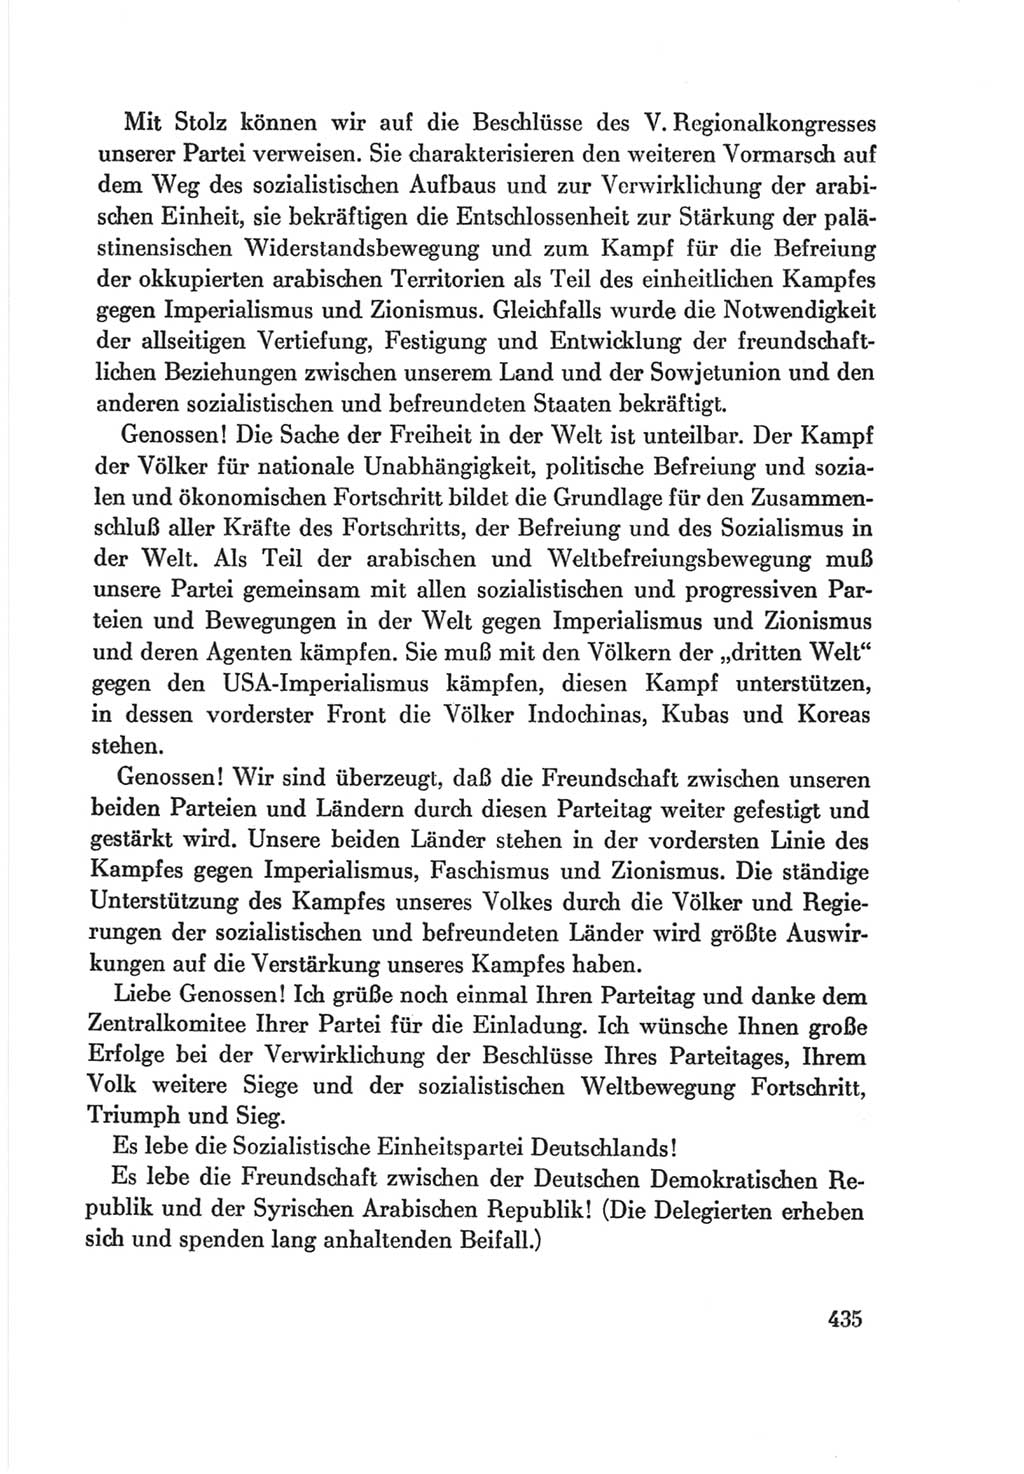 Protokoll der Verhandlungen des Ⅷ. Parteitages der Sozialistischen Einheitspartei Deutschlands (SED) [Deutsche Demokratische Republik (DDR)] 1971, Band 1, Seite 435 (Prot. Verh. Ⅷ. PT SED DDR 1971, Bd. 1, S. 435)